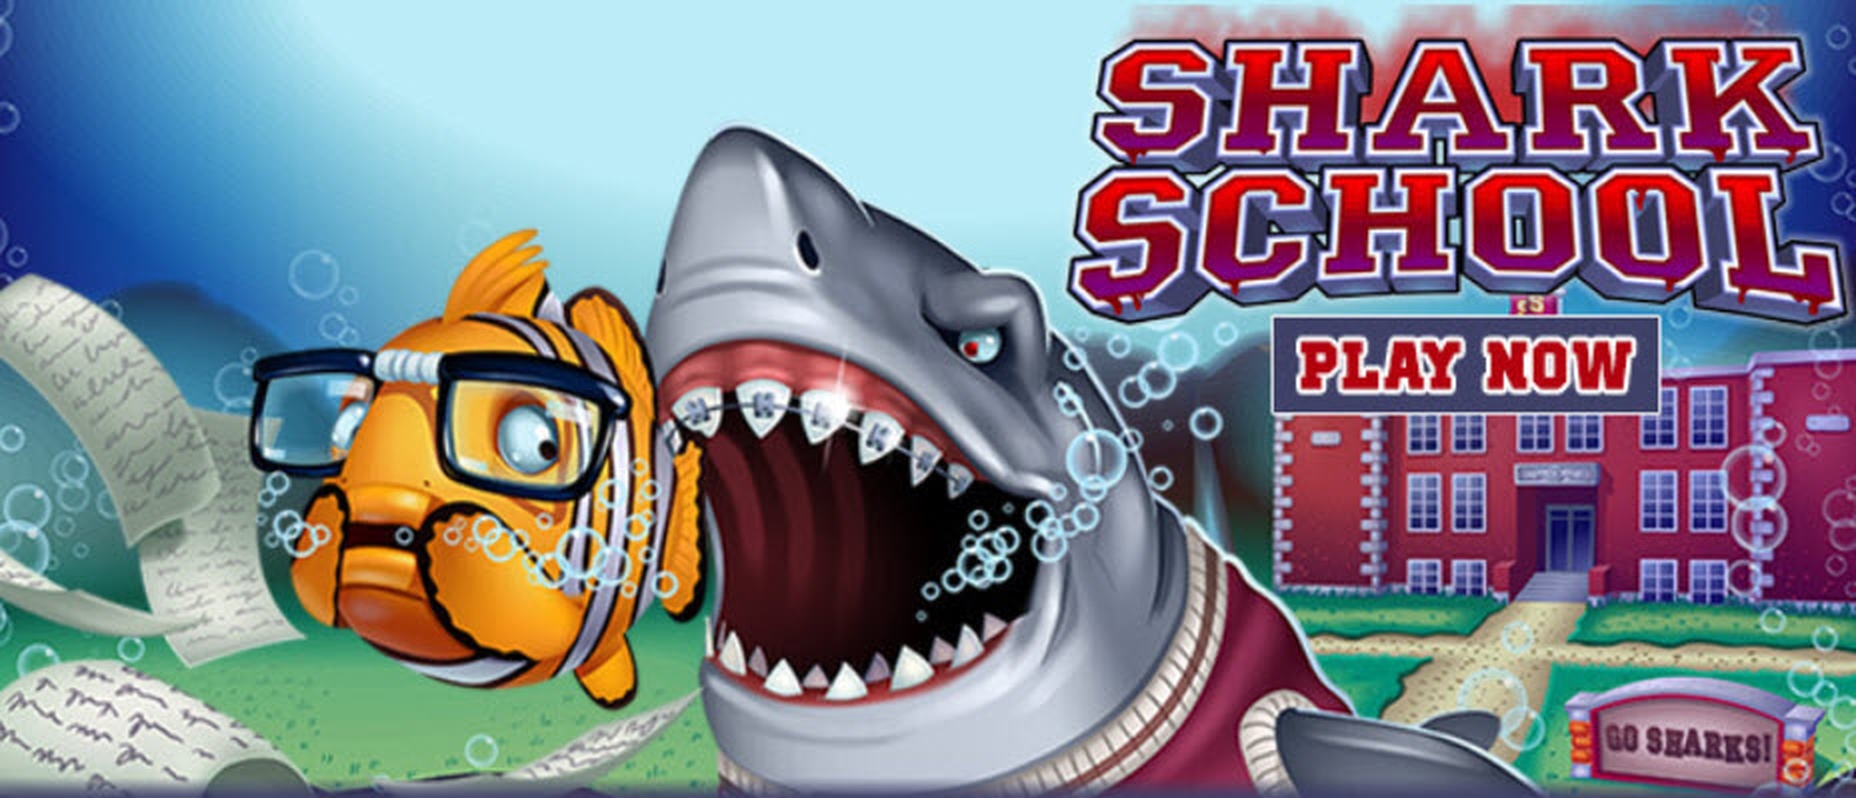 Shark School demo